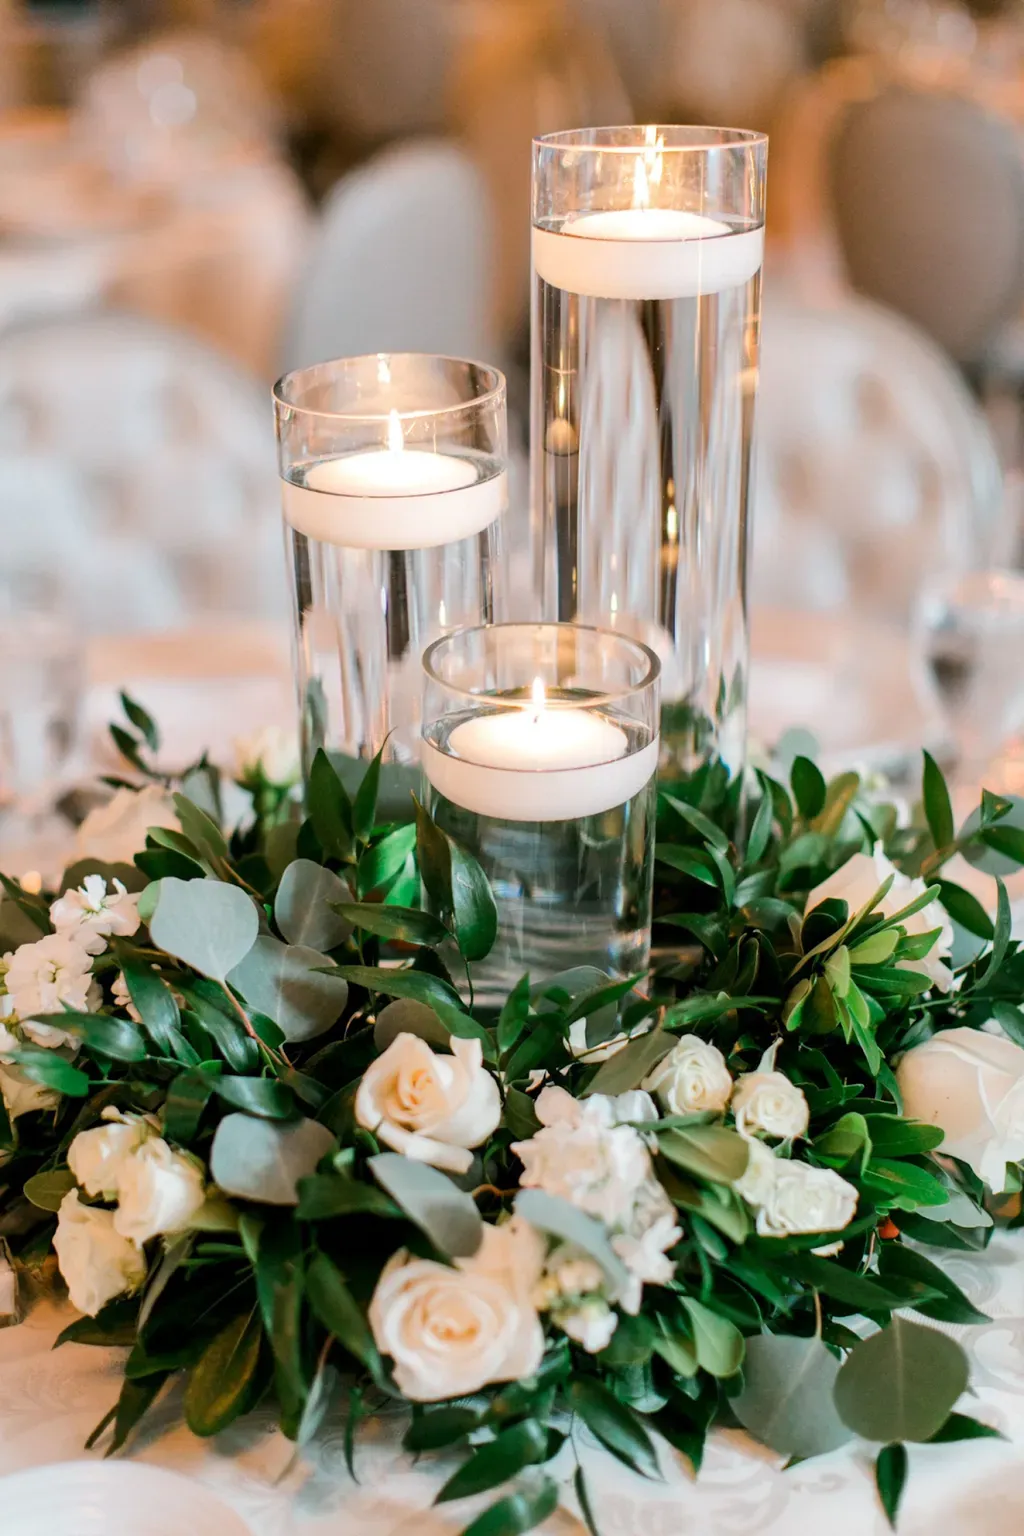 Cách cắm hoa kết hợp nến và hoa thường thấy trong các bữa tiệc hoặc đám cưới